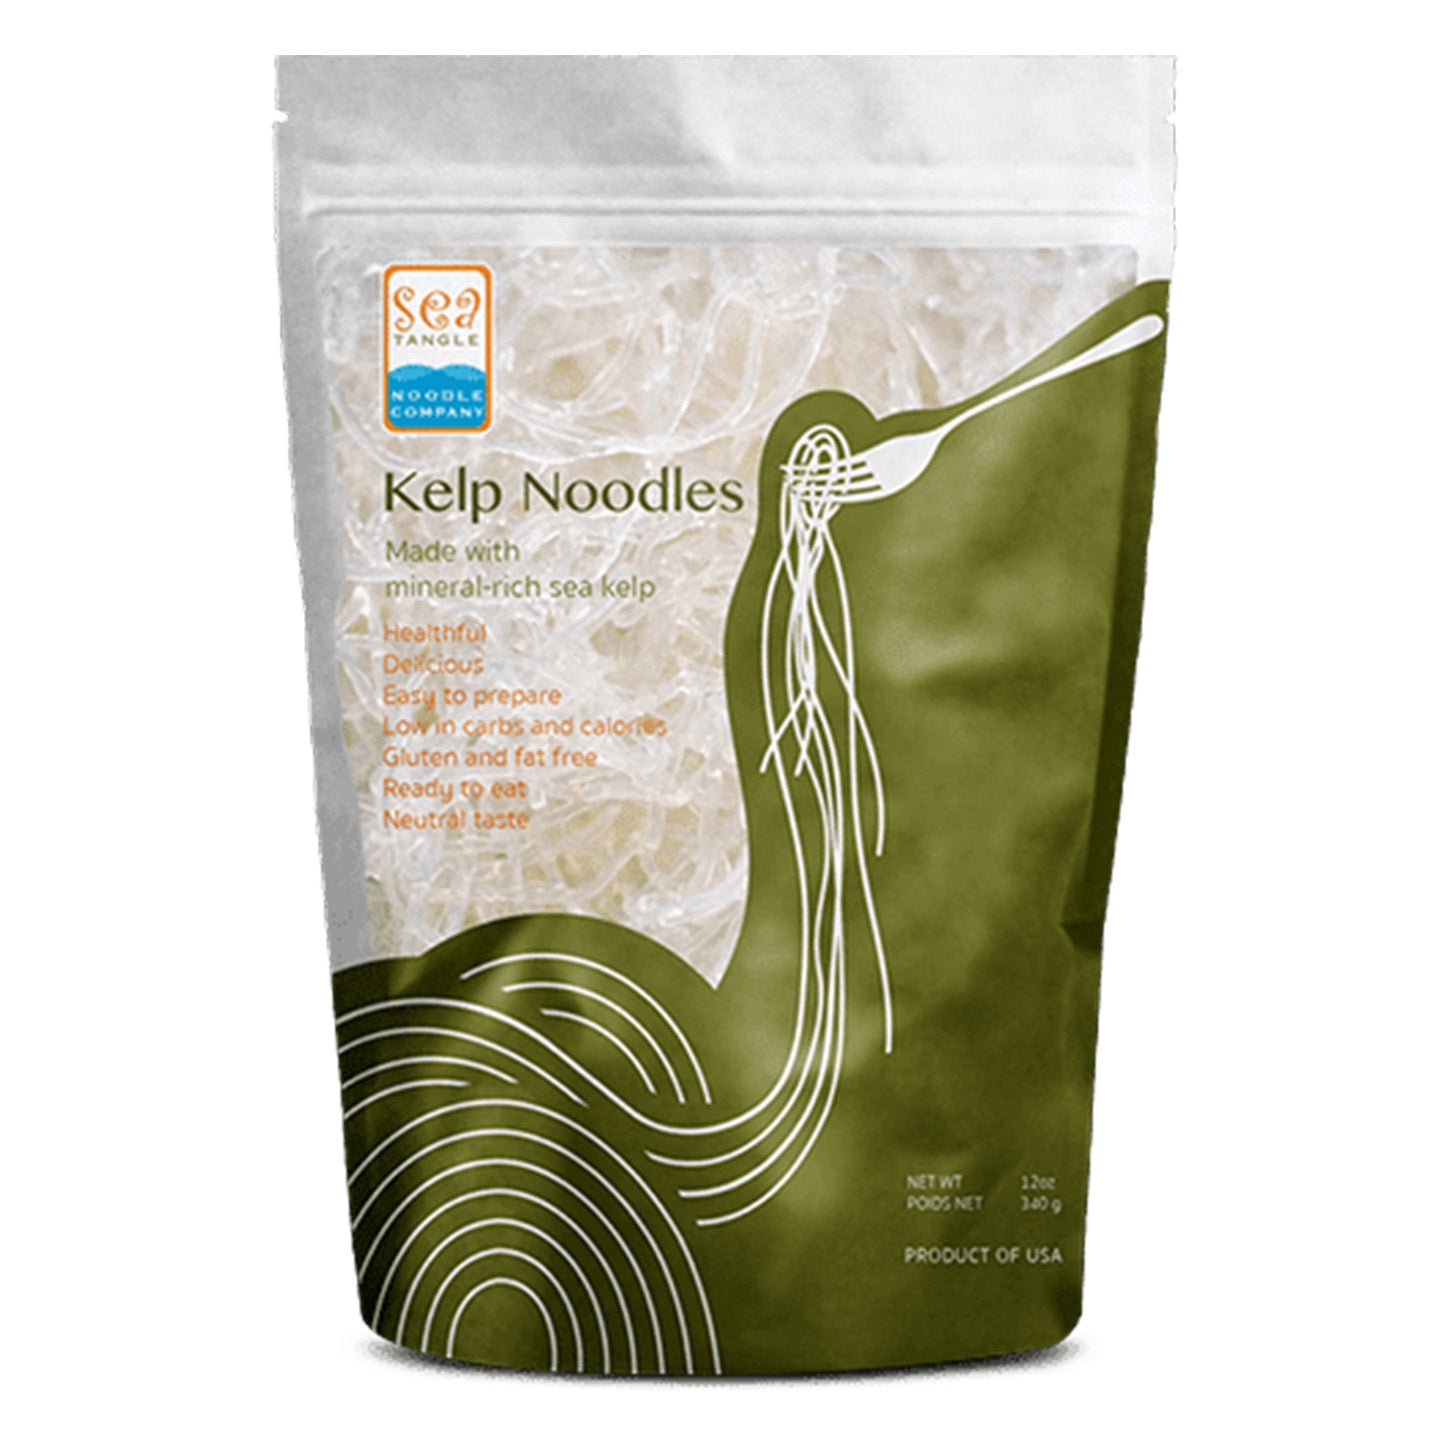 Descubre una Alternativa Saludable con Sea Tangle Noodle Kelp Noodles | ProHealth Shop [Panamá]